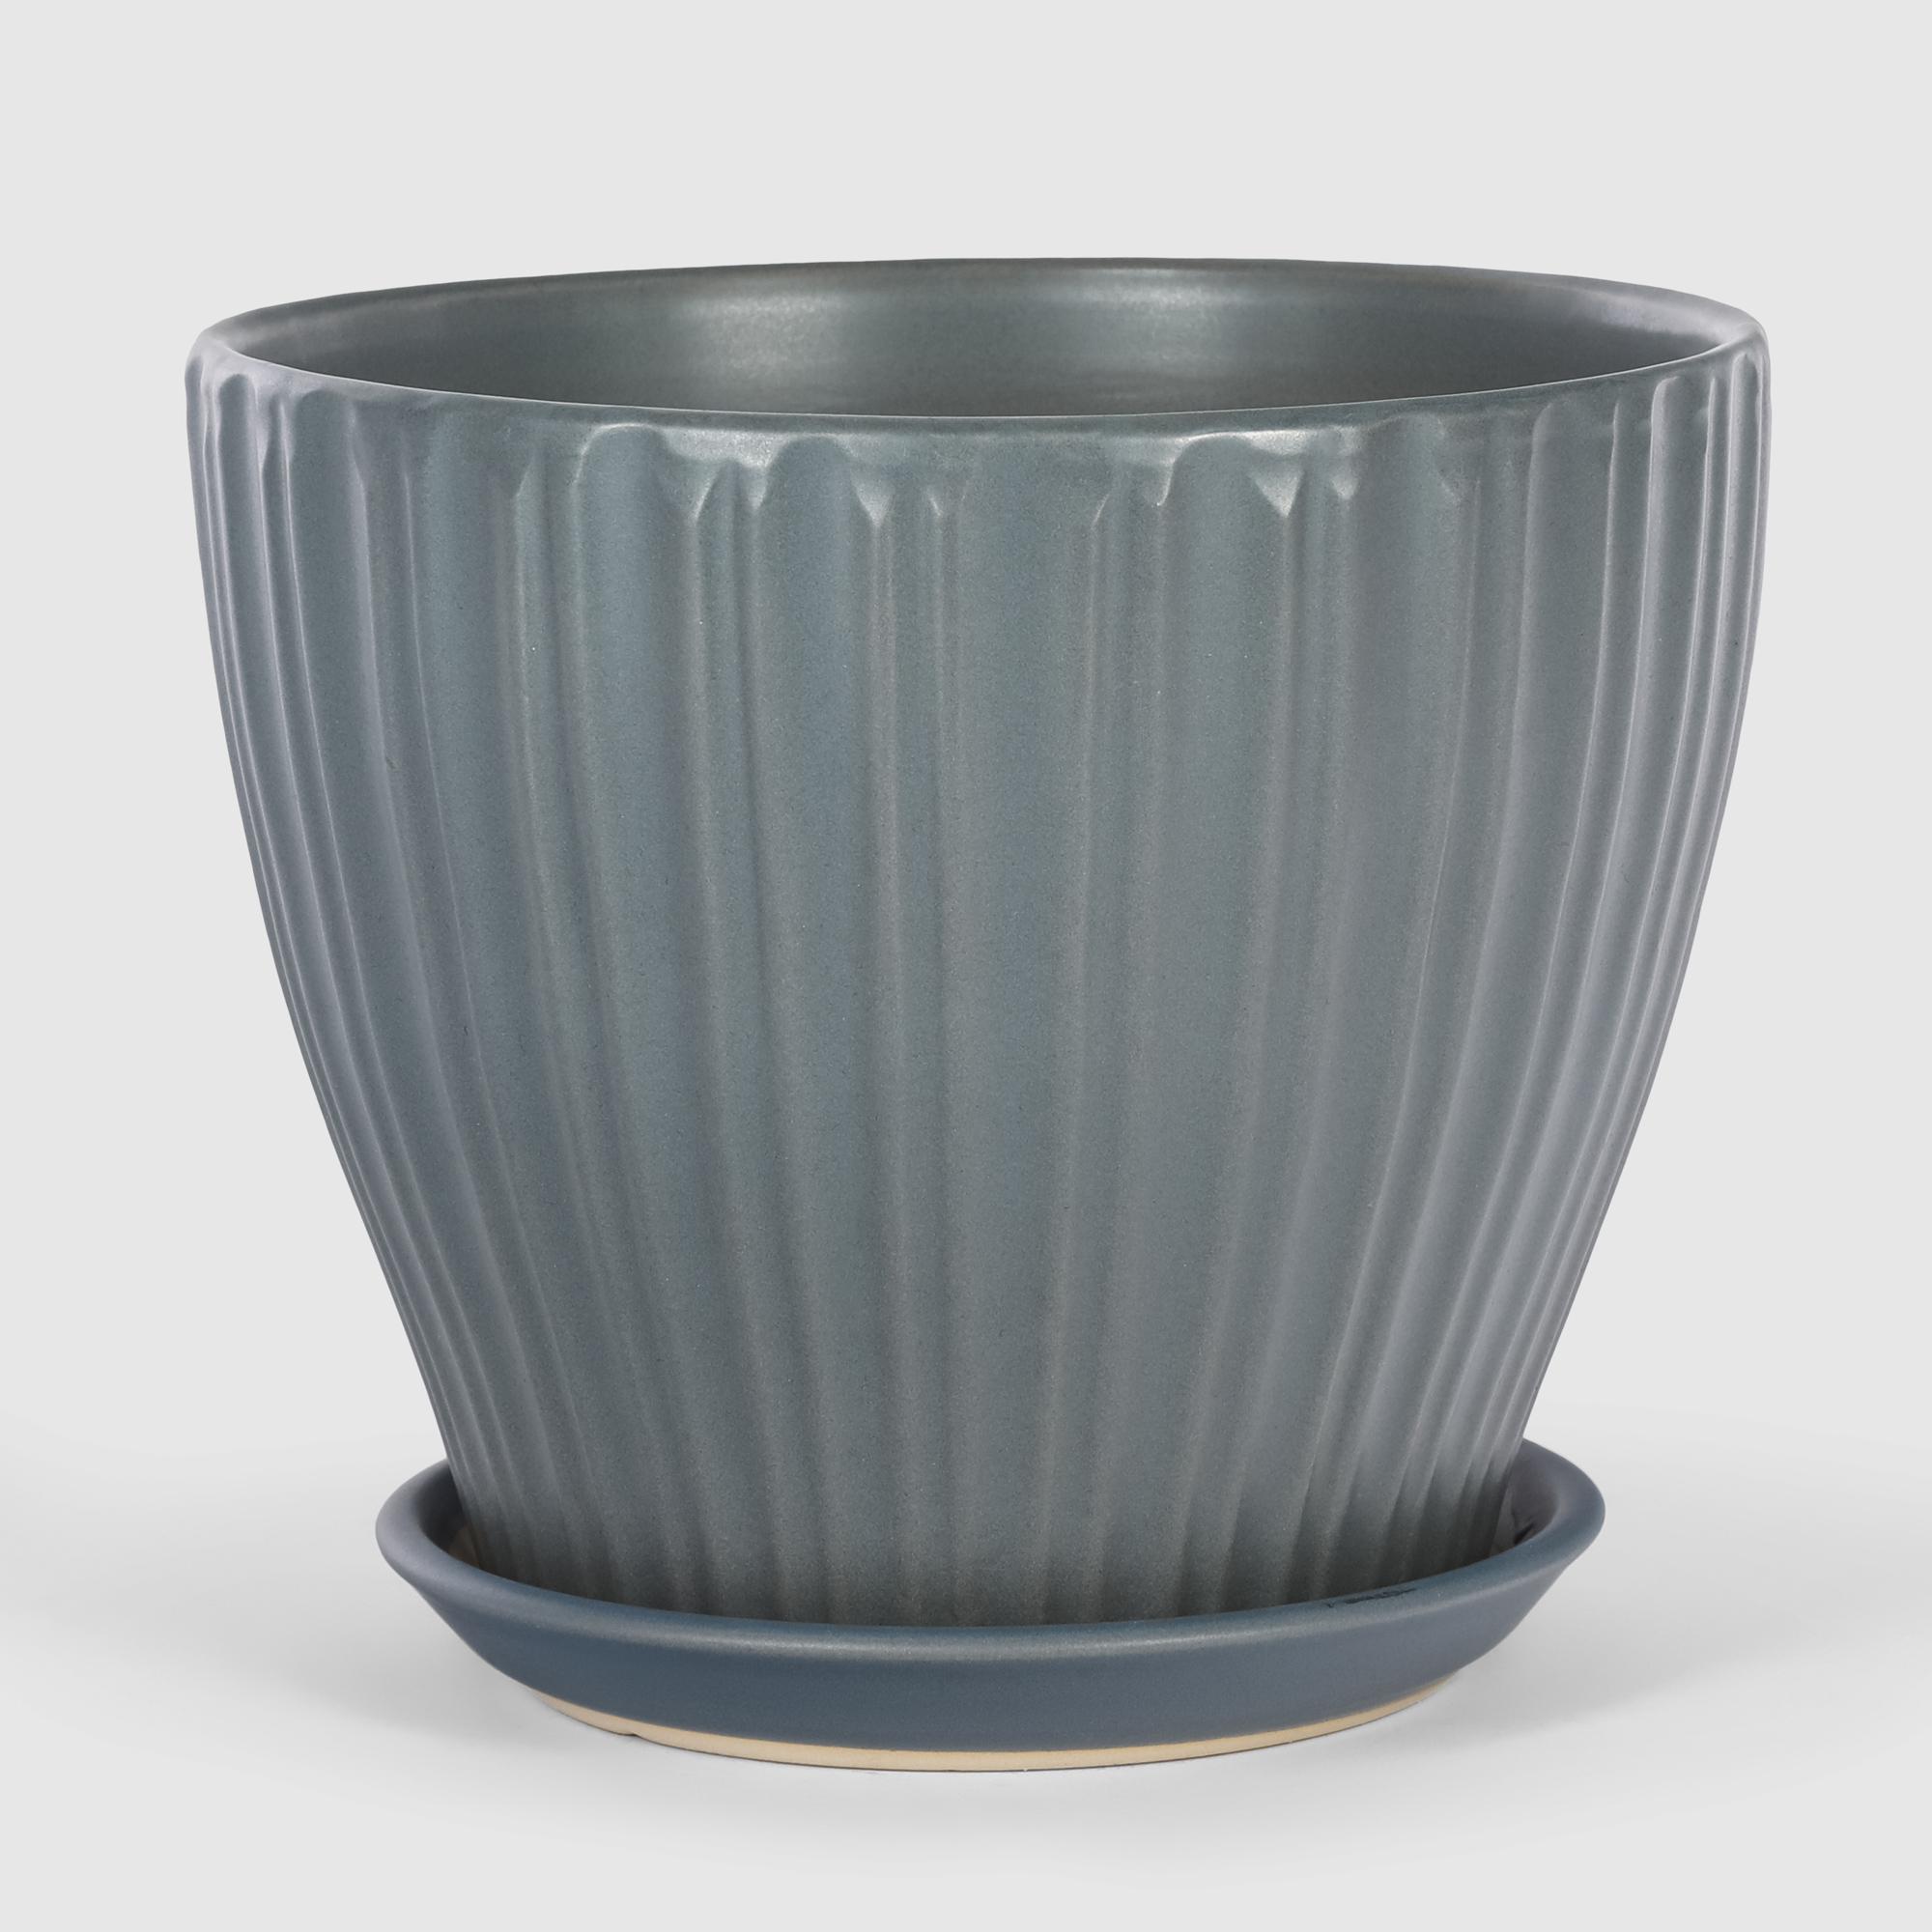 Кашпо керамическое для цветов Shine Pots 16x14см серое матовое кашпо пластиковое для ов подвесное с дренажной сеткой